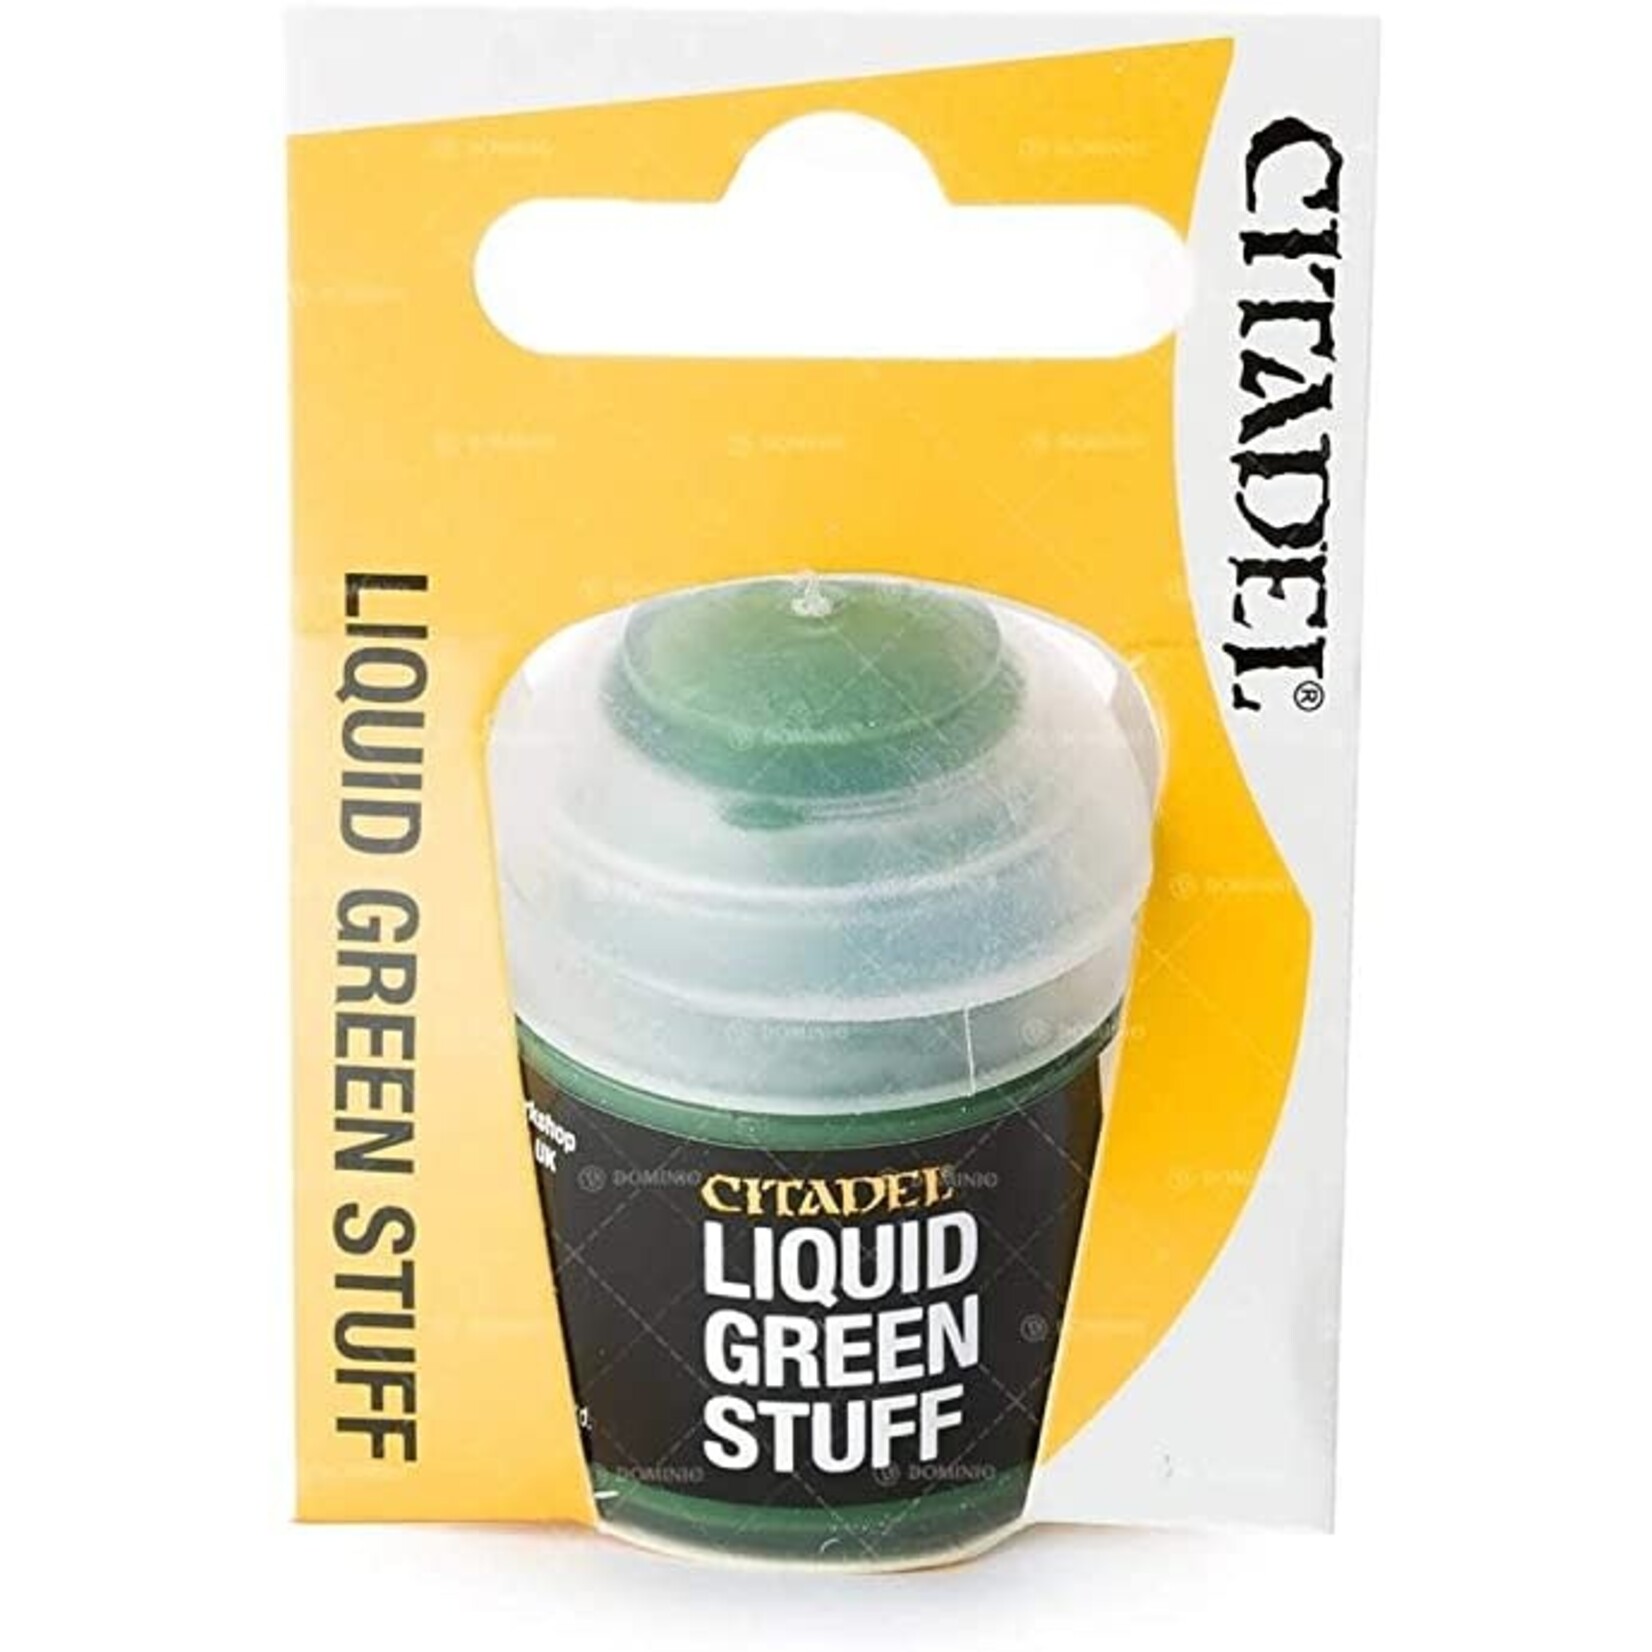 Citadel Liquid Green Stuff - Next-Gen Games